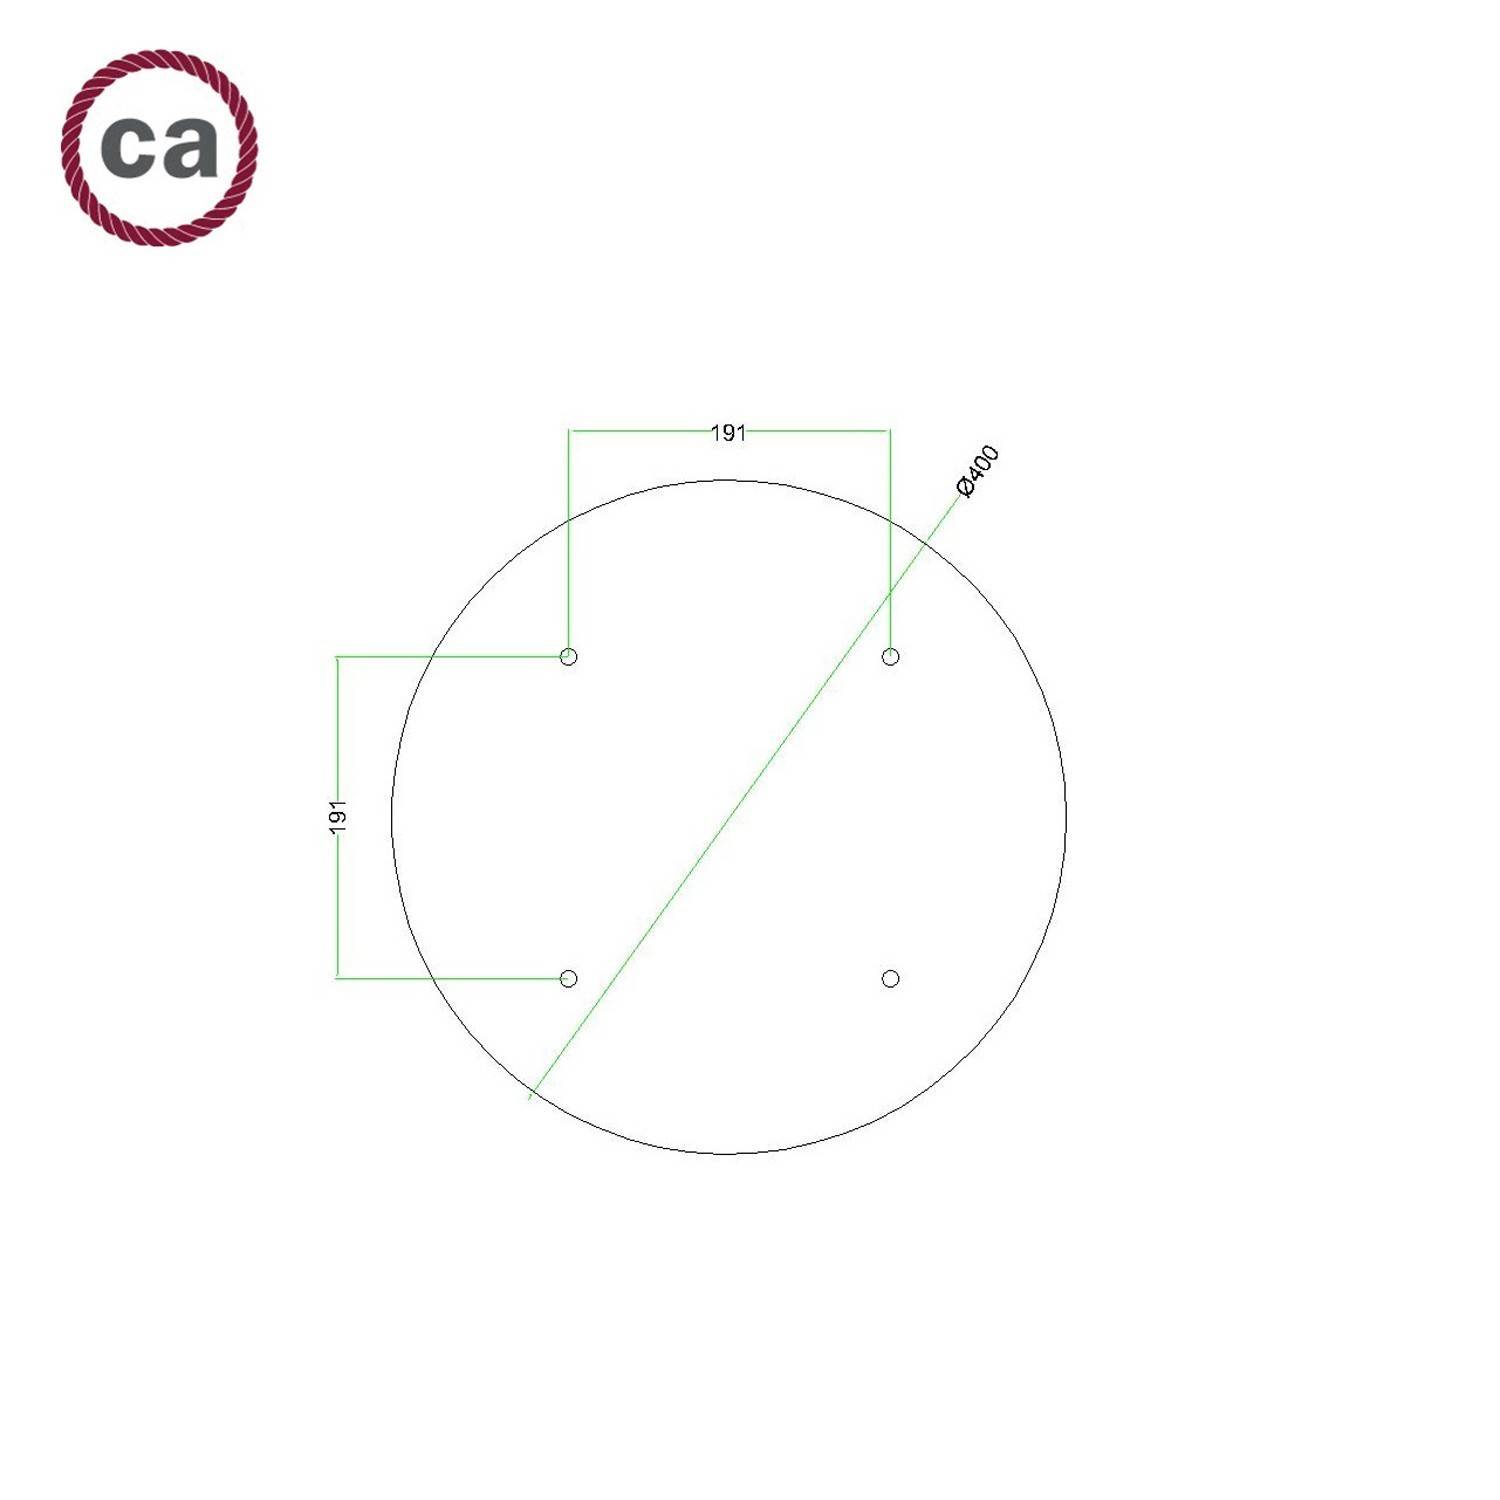 Bodové svítidlo kruhové, 4 zdroje se stínidly Tub-E14, baldachýn kruh Rose-One XXL